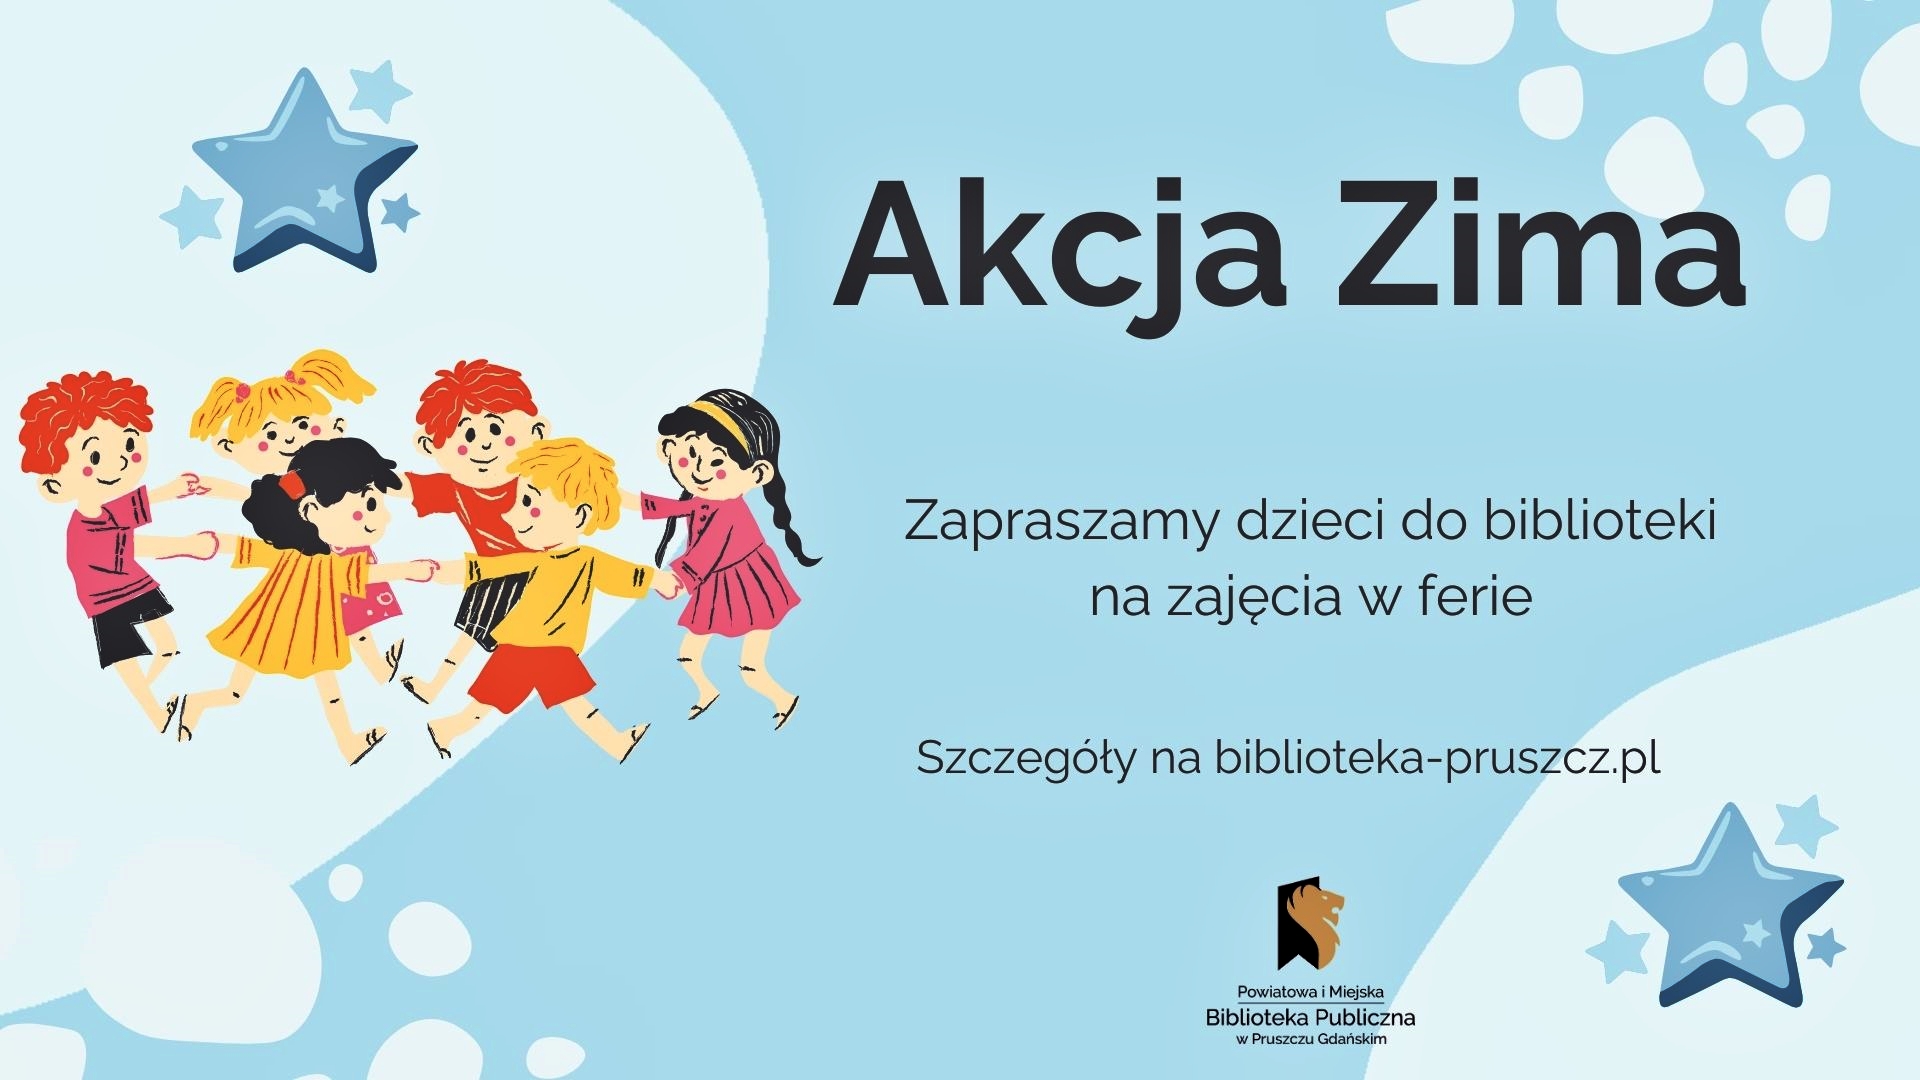 Na błękitnym tle napisy: Akcja Zima. Zapraszamy dzieci do biblioteki na zajęcia w ferie. Szczegóły na biblioteka-pruszcz.pl. W lewym rogu dzieci trzymające się za ręce, tańczące w kółku.